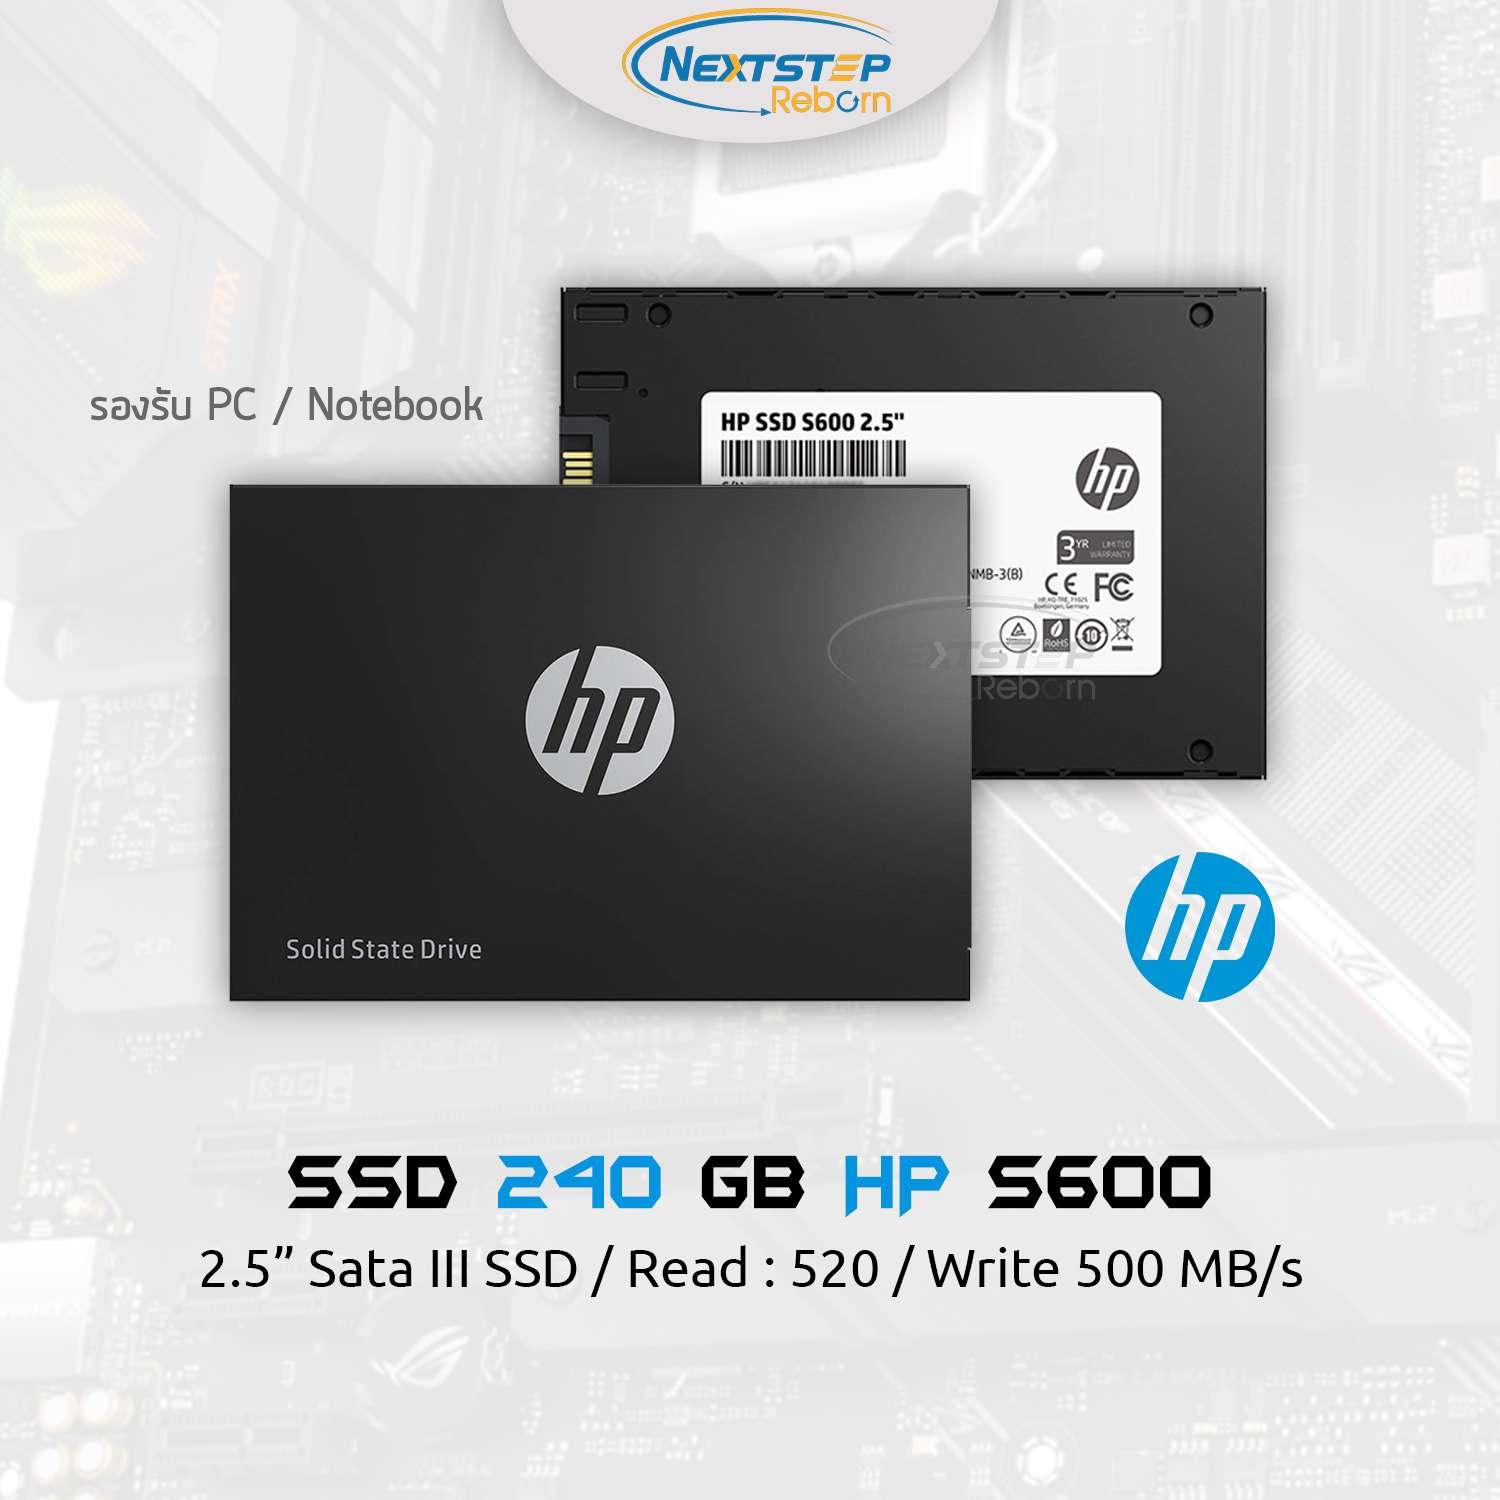 SSD 240GB HP S600 2.5